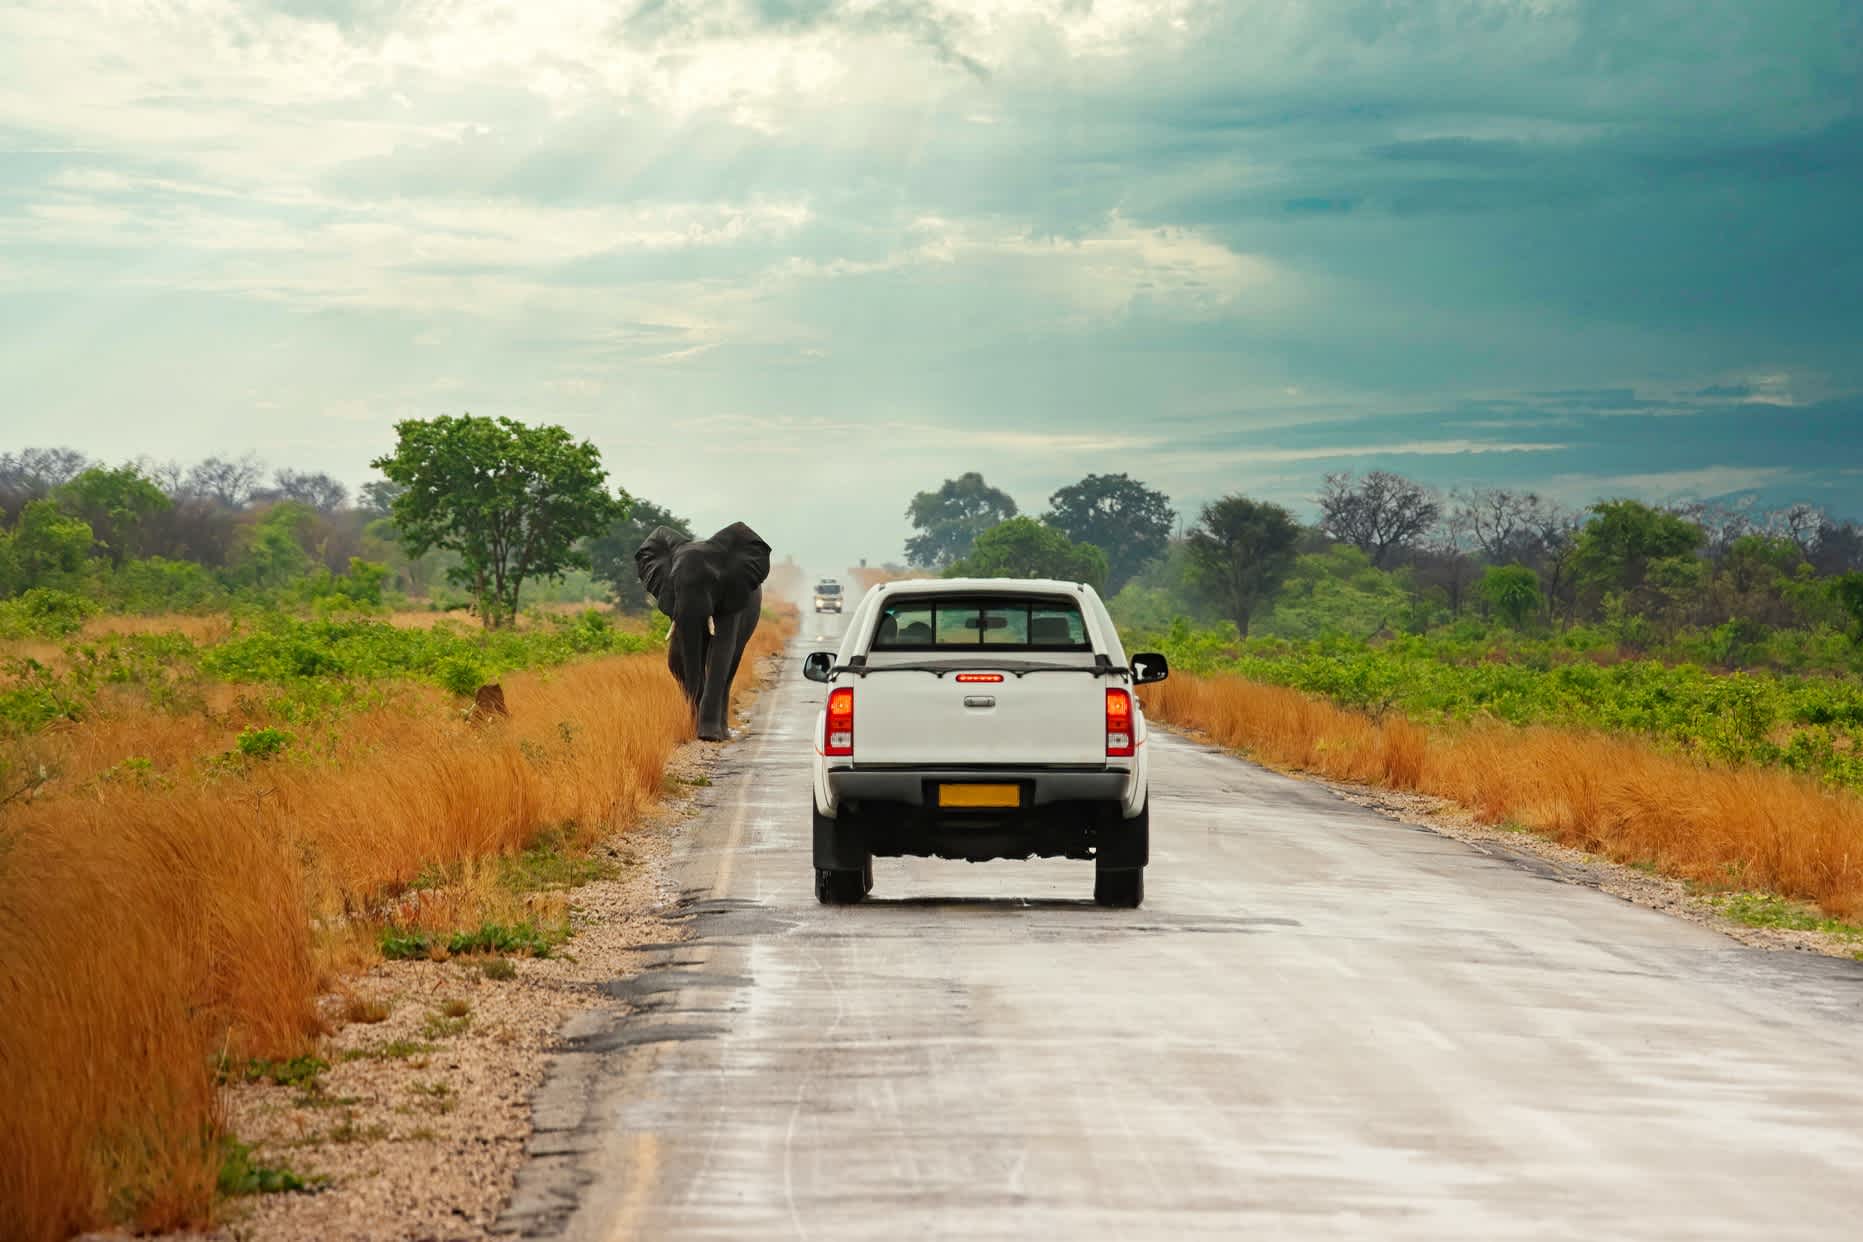 Un éléphant qui marche en bord de route devant un 4x4 à Kasane, Botswana.